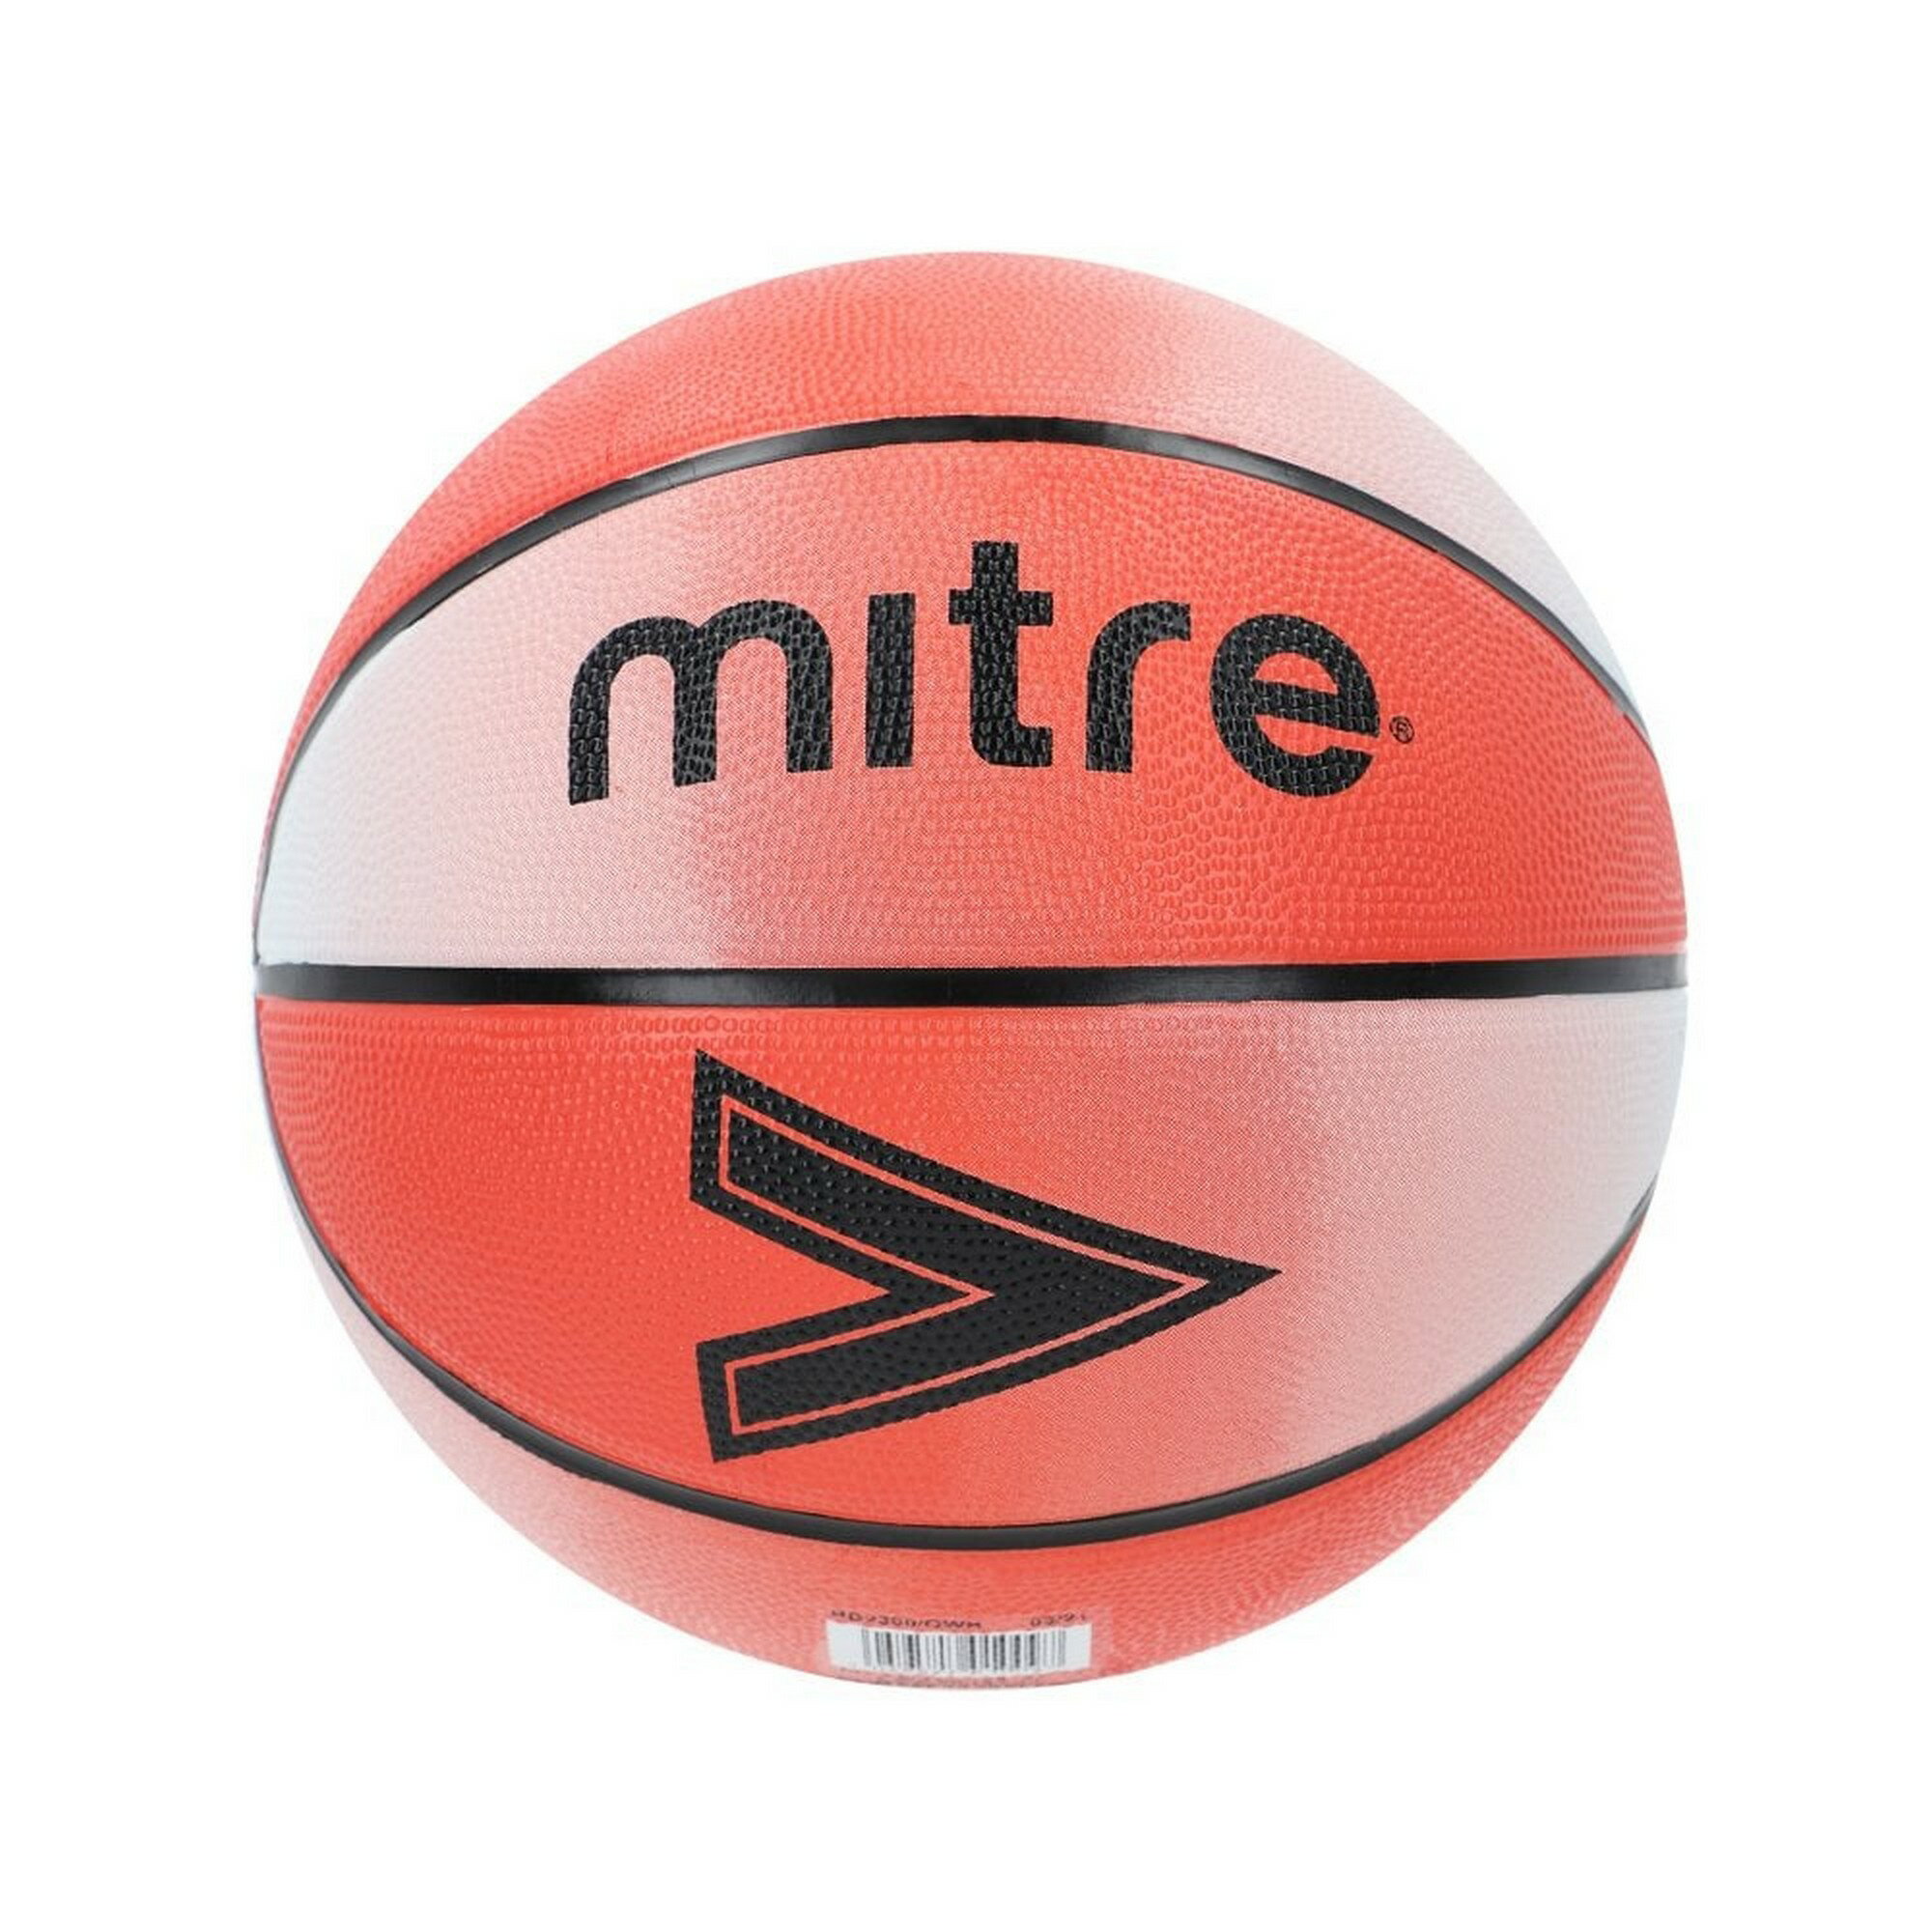 (マイター) Mitre Wound バスケットボール 【海外通販】